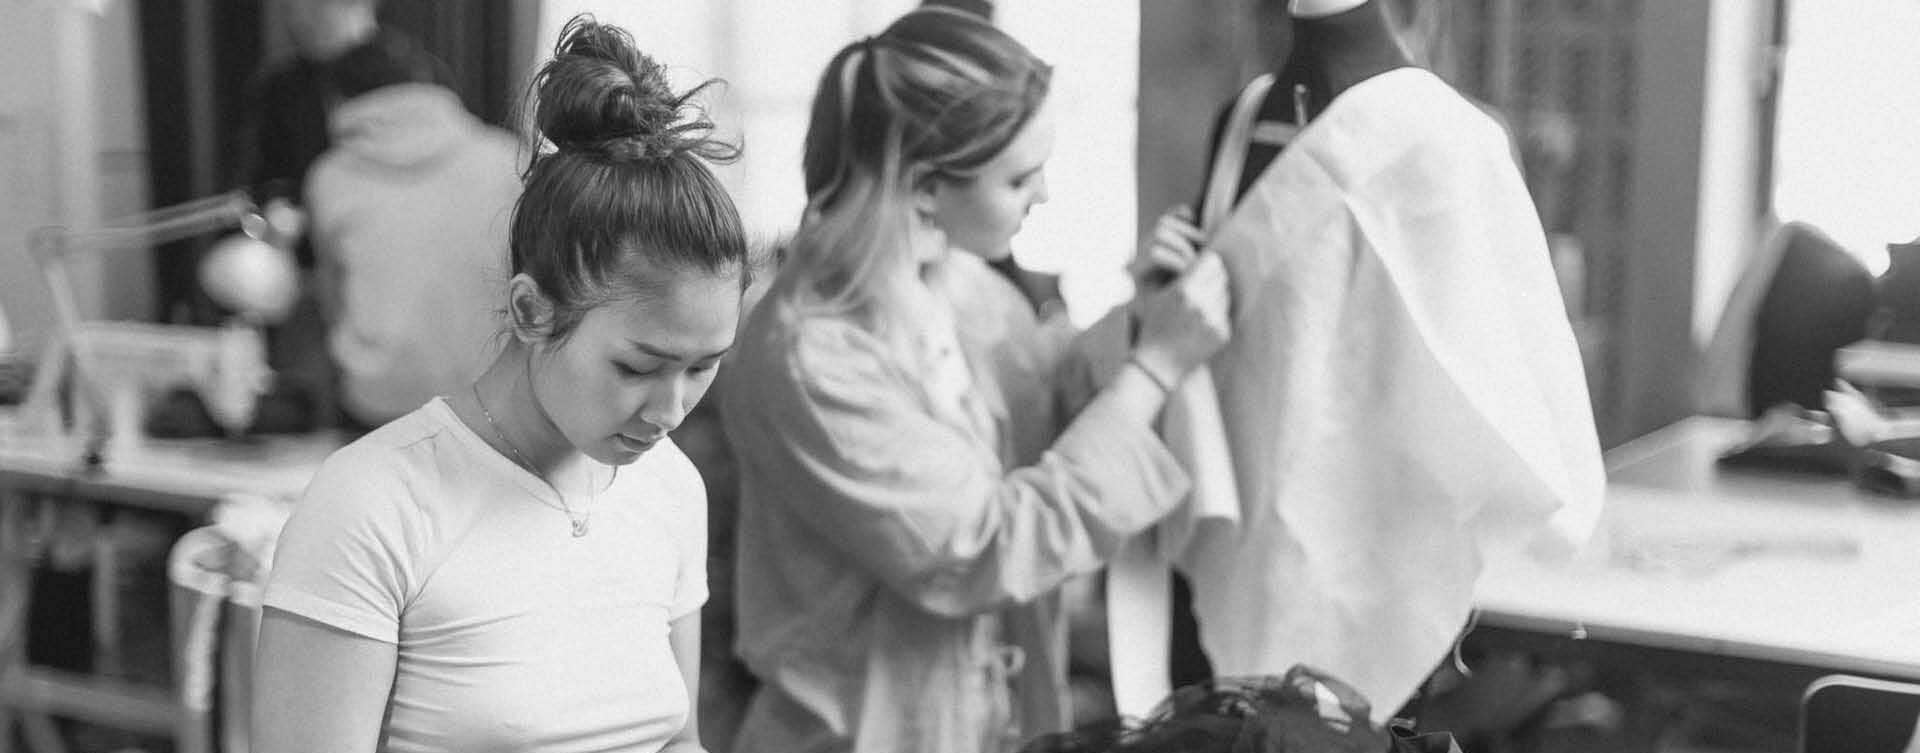 Elever arbetar fokuserat med kläder i verkstad, svartvitt.